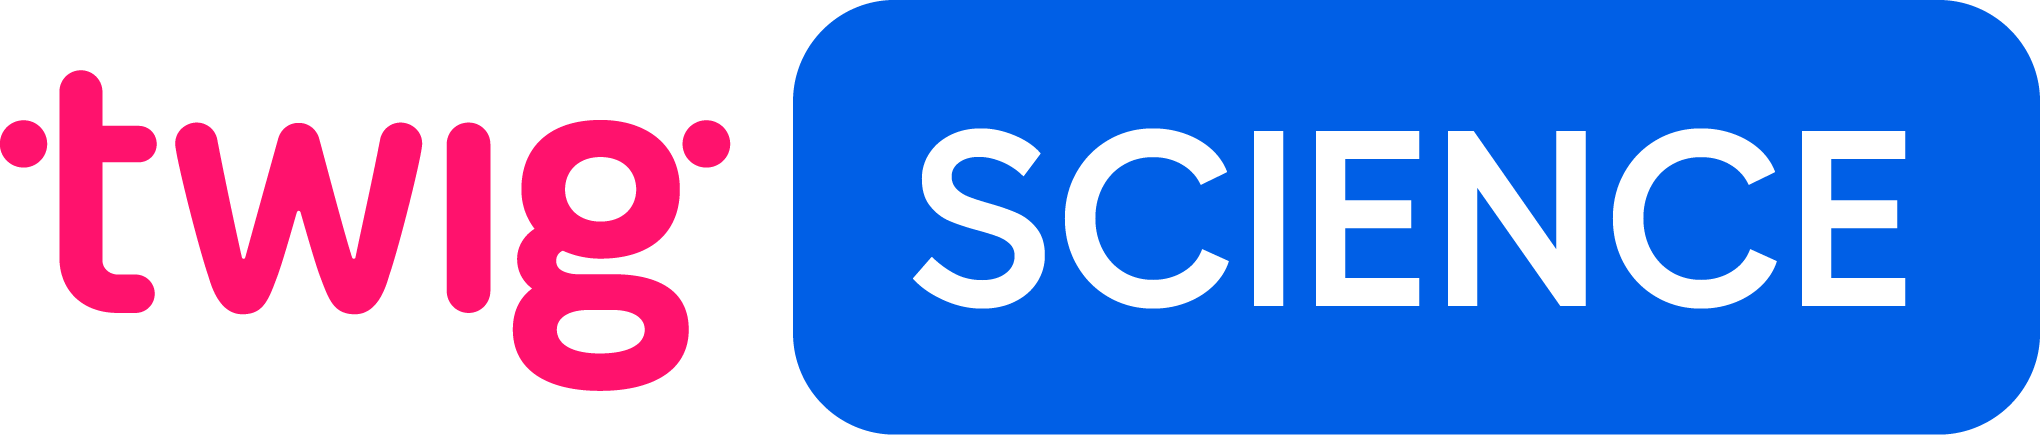 Twig Science logo